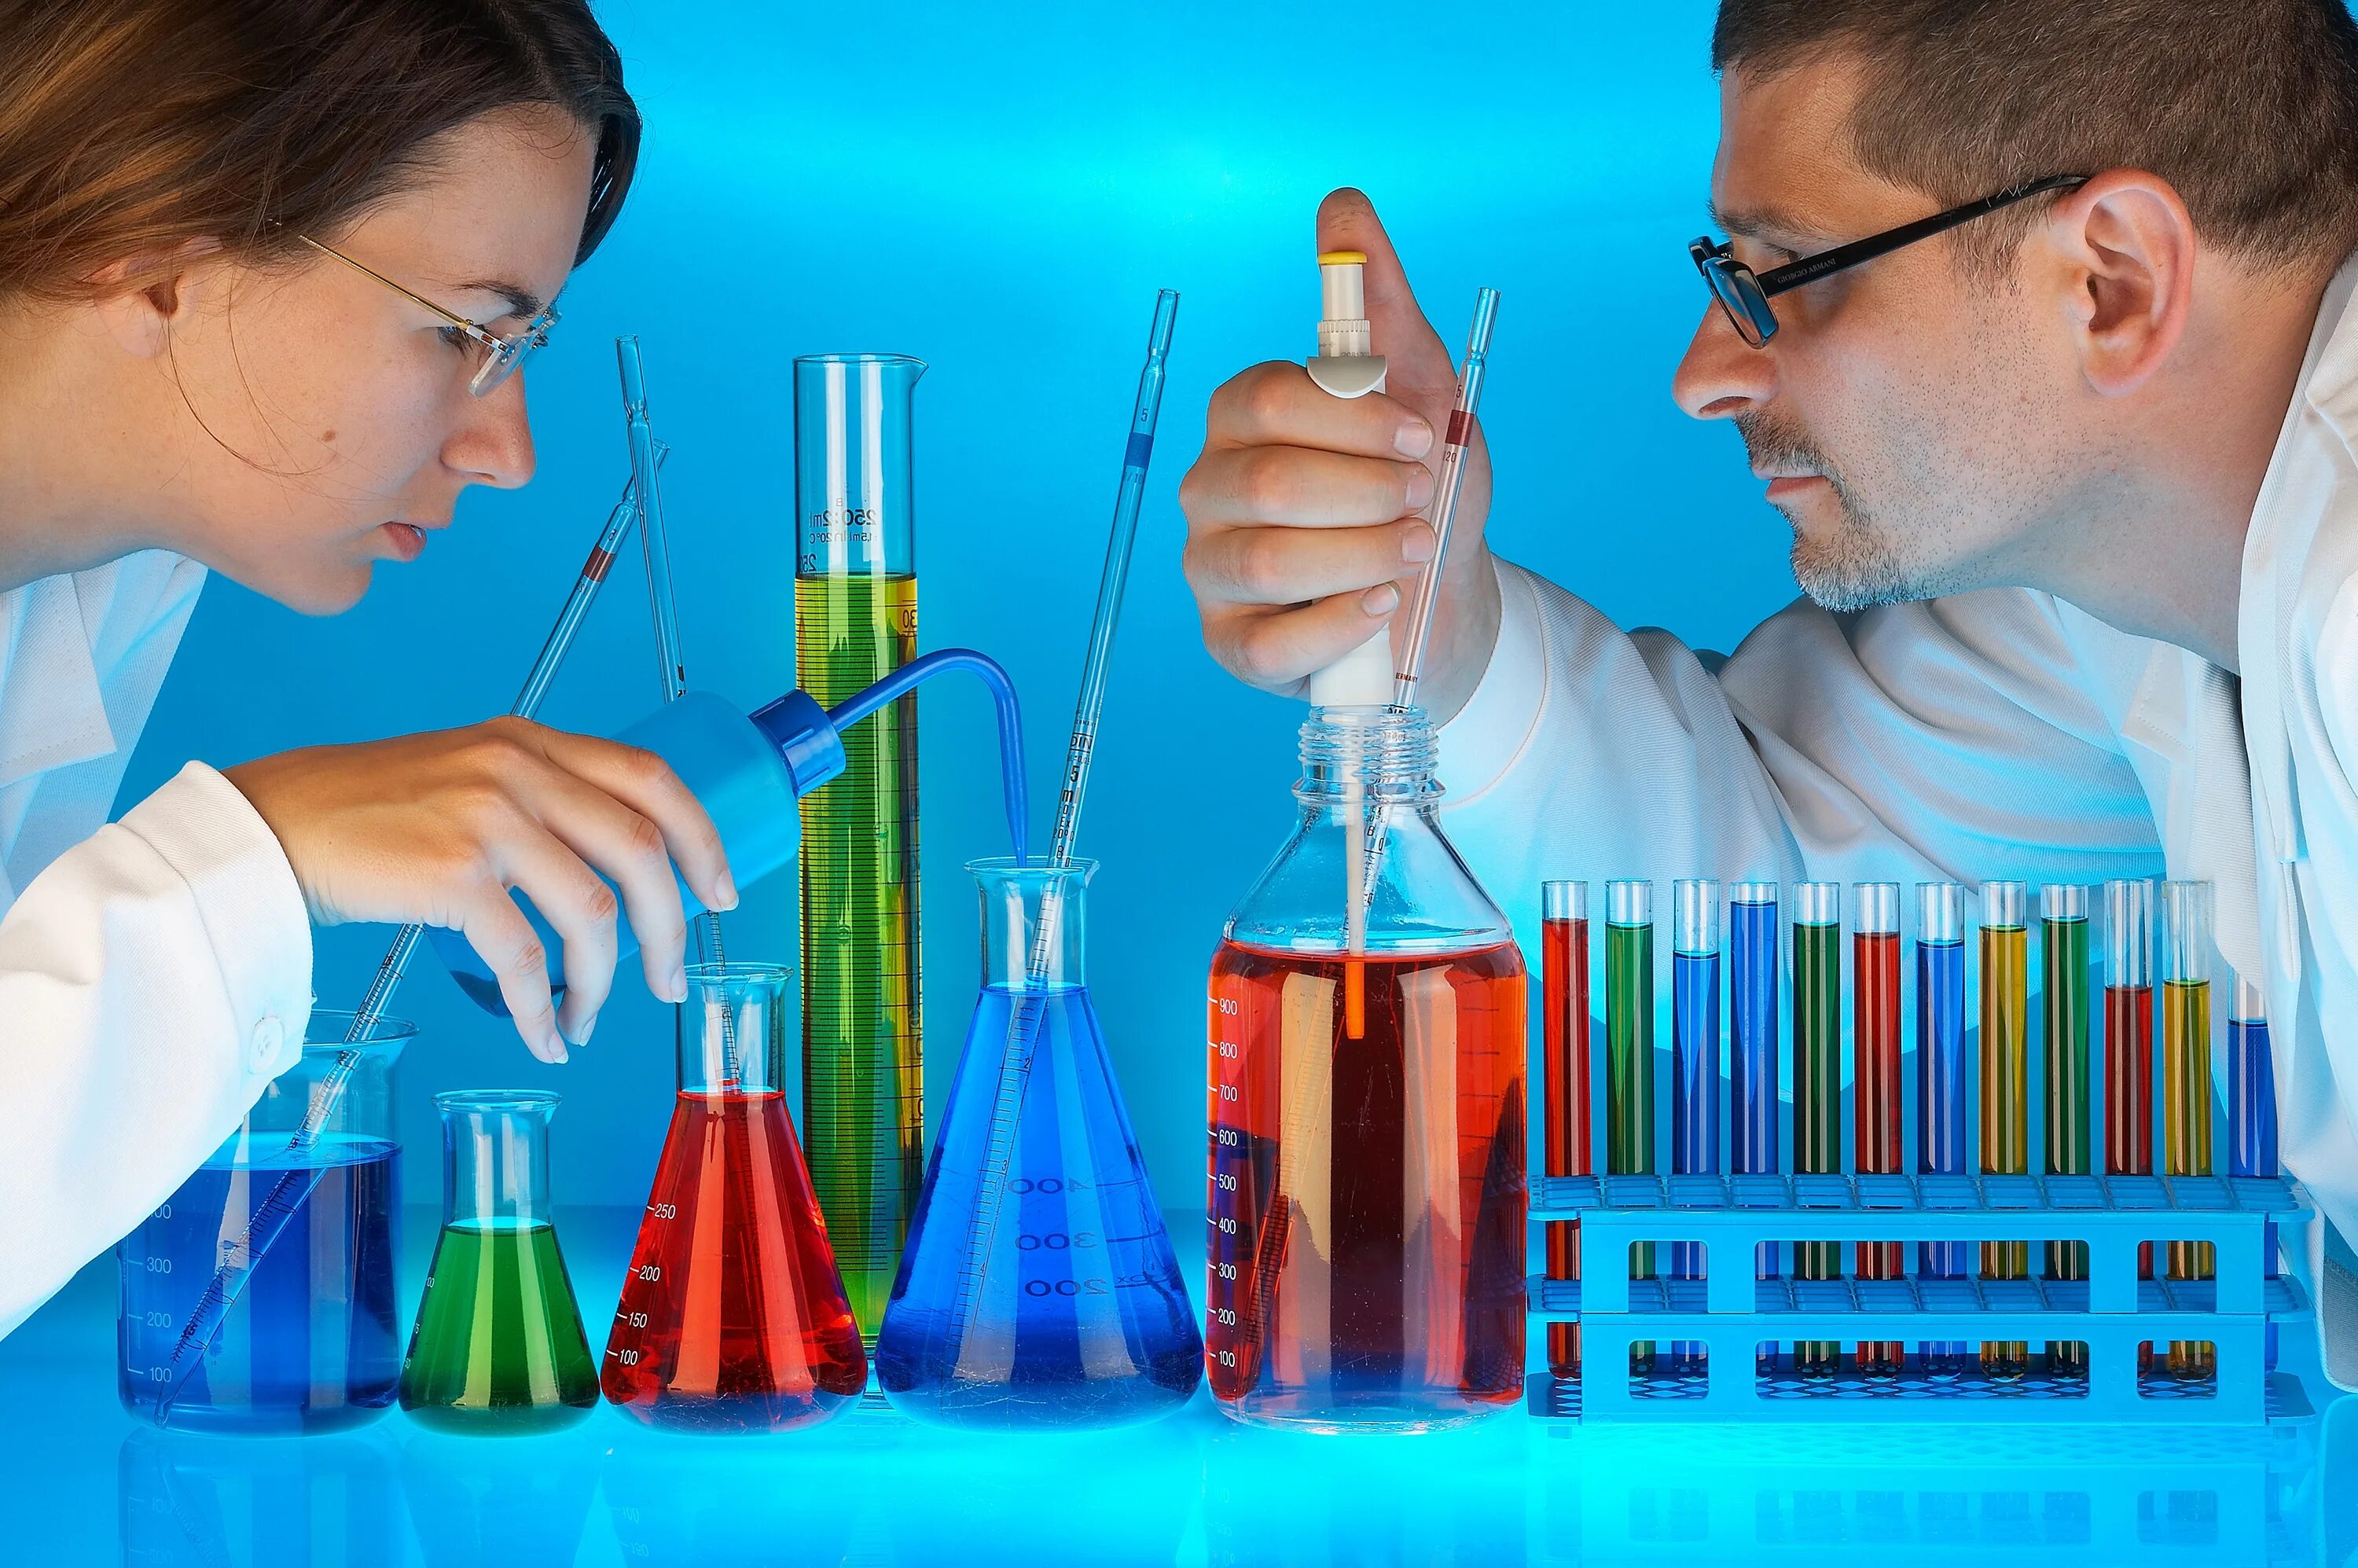 Методы биологического эксперимента. Химическая технология. Профессия Химик. Лабораторные и экспериментальные методы. Химические опыты в лаборатории.